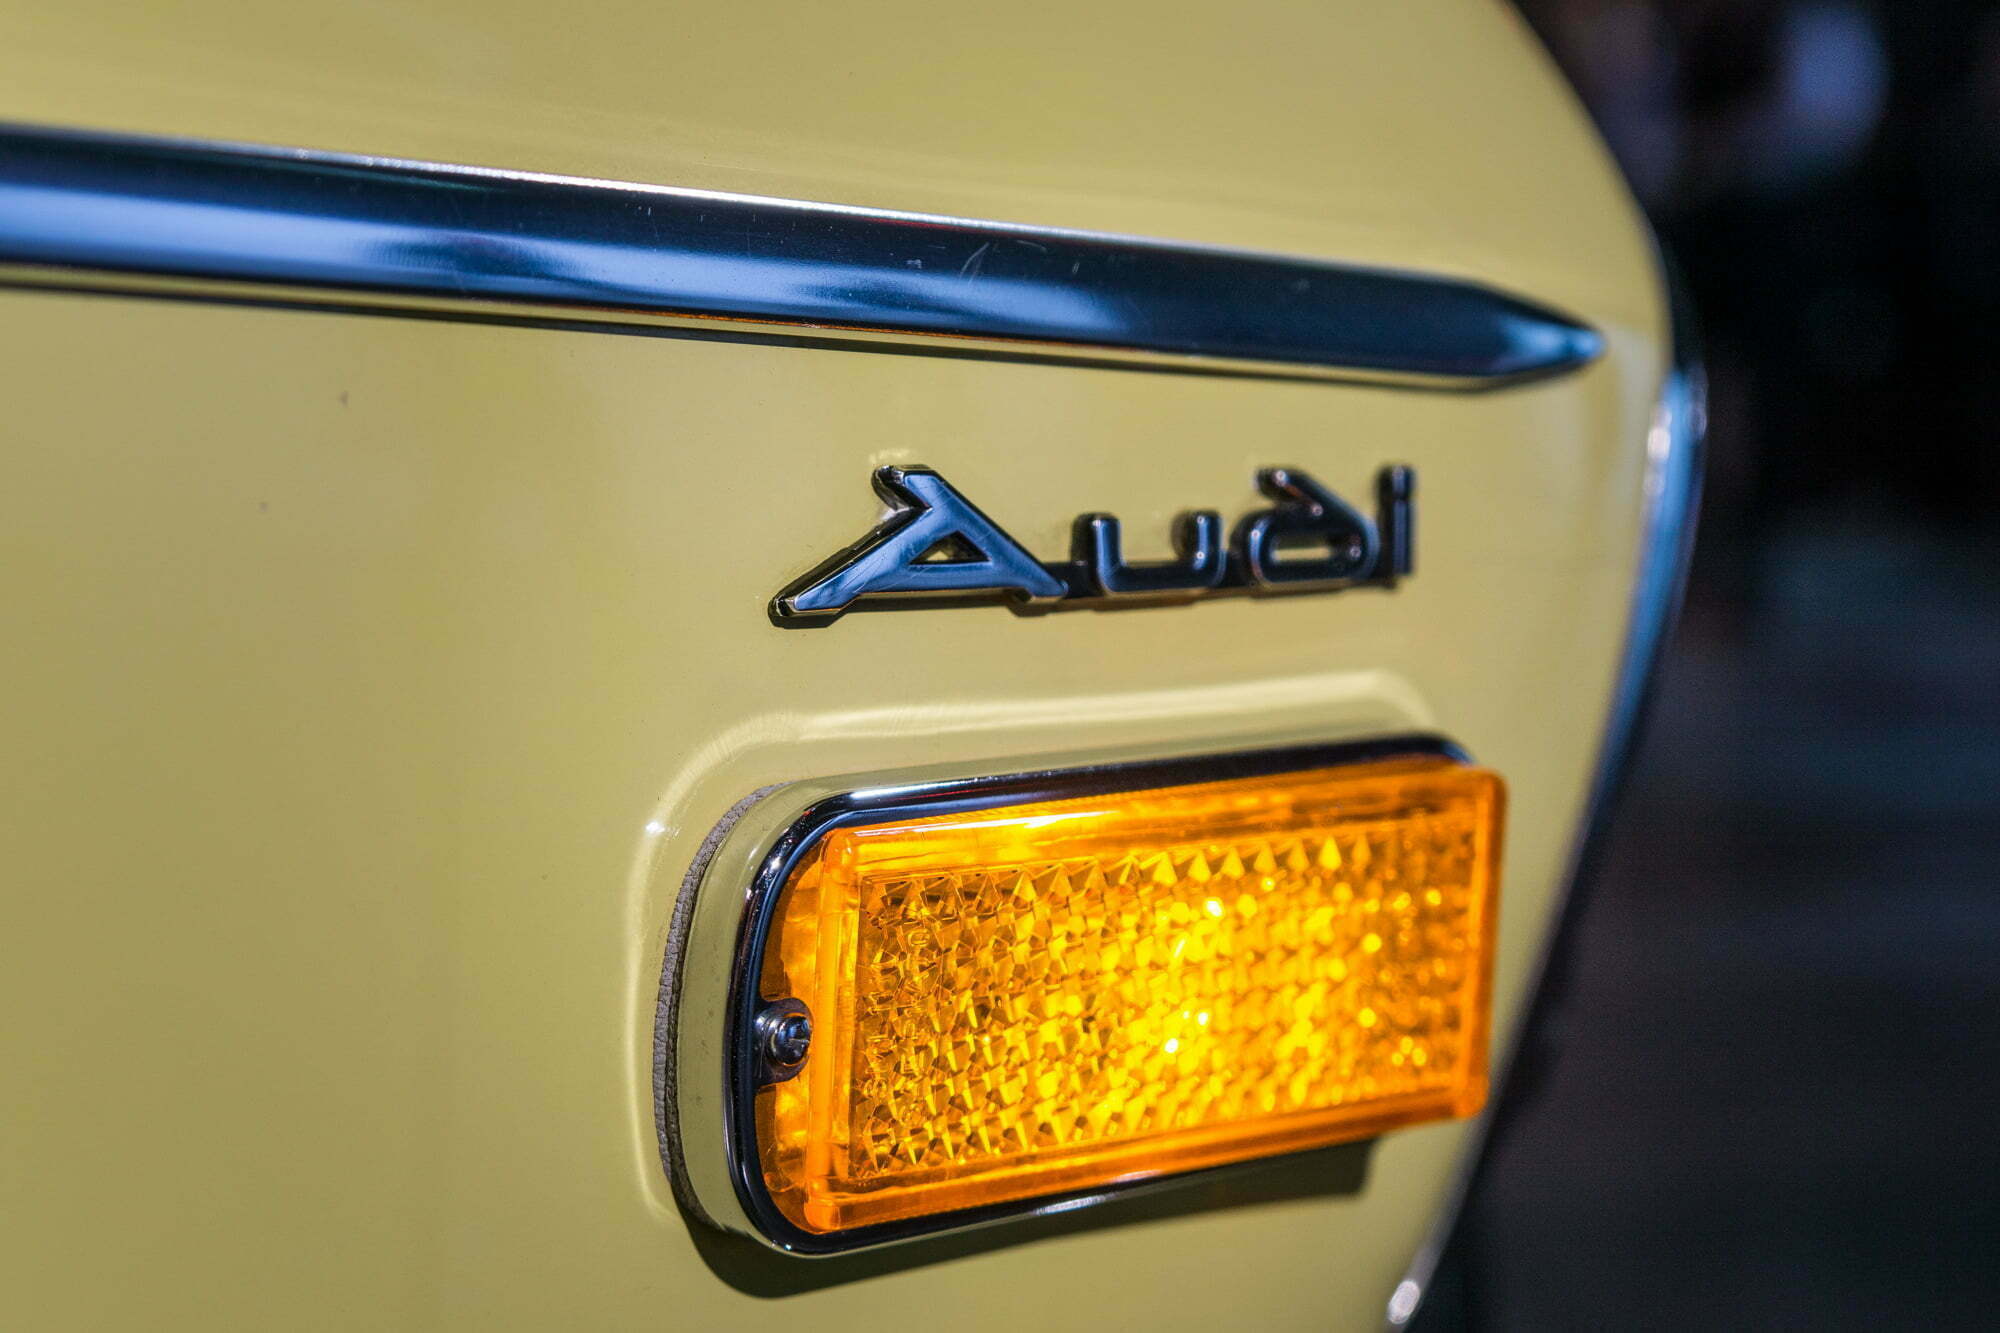 Audi, NYIAS, New York Auto Show